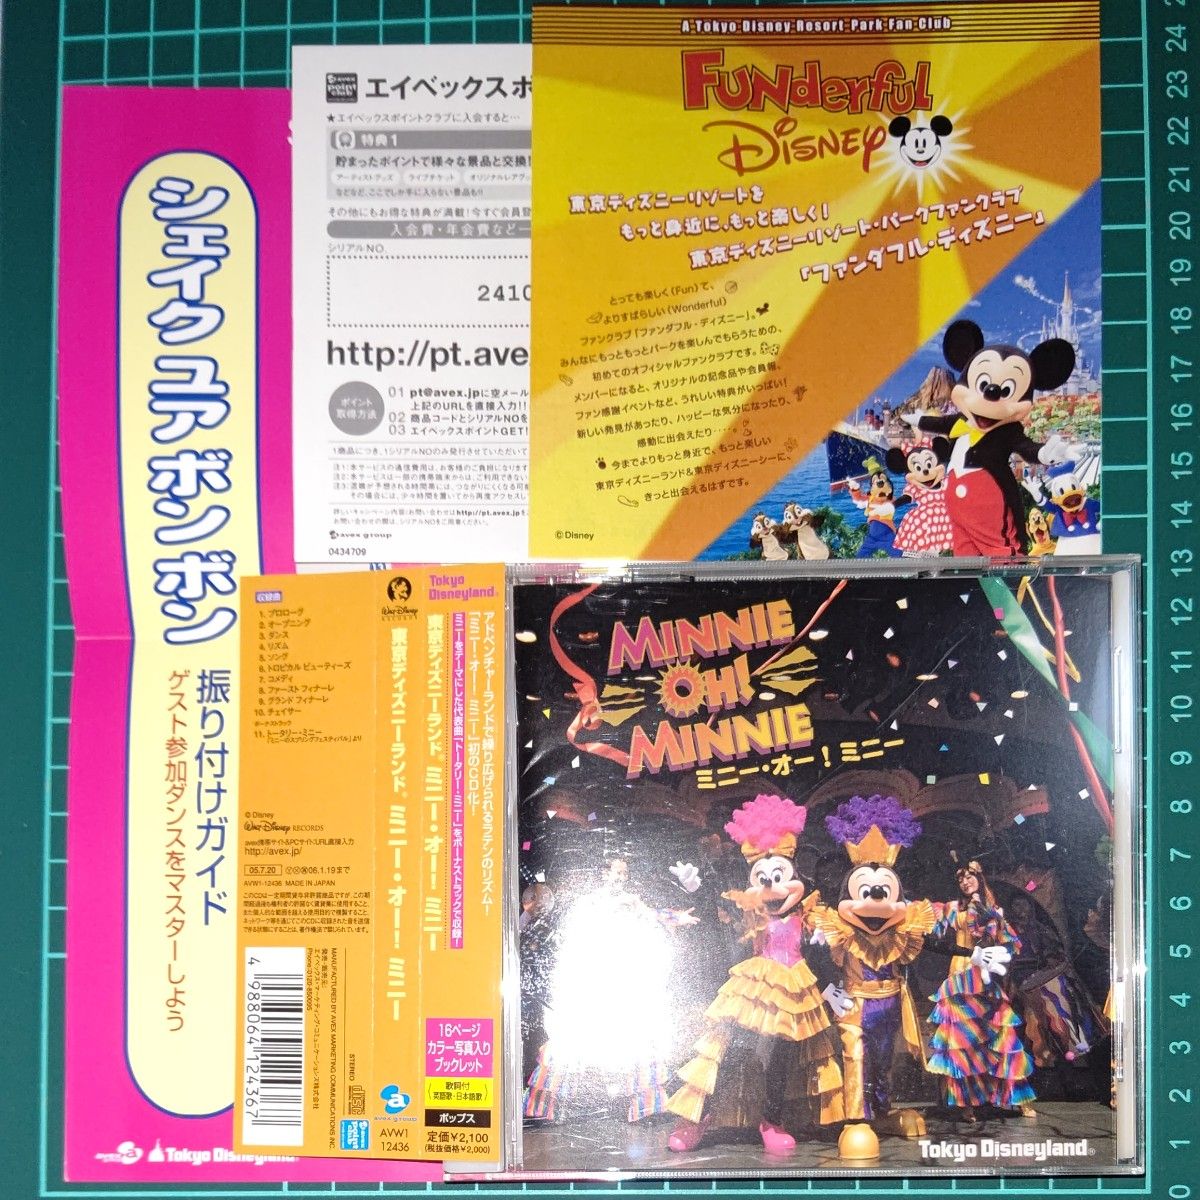 ディズニーランド ミニーオーミニー CD Disney land Minnie oh! Minnie 振り付けガイド